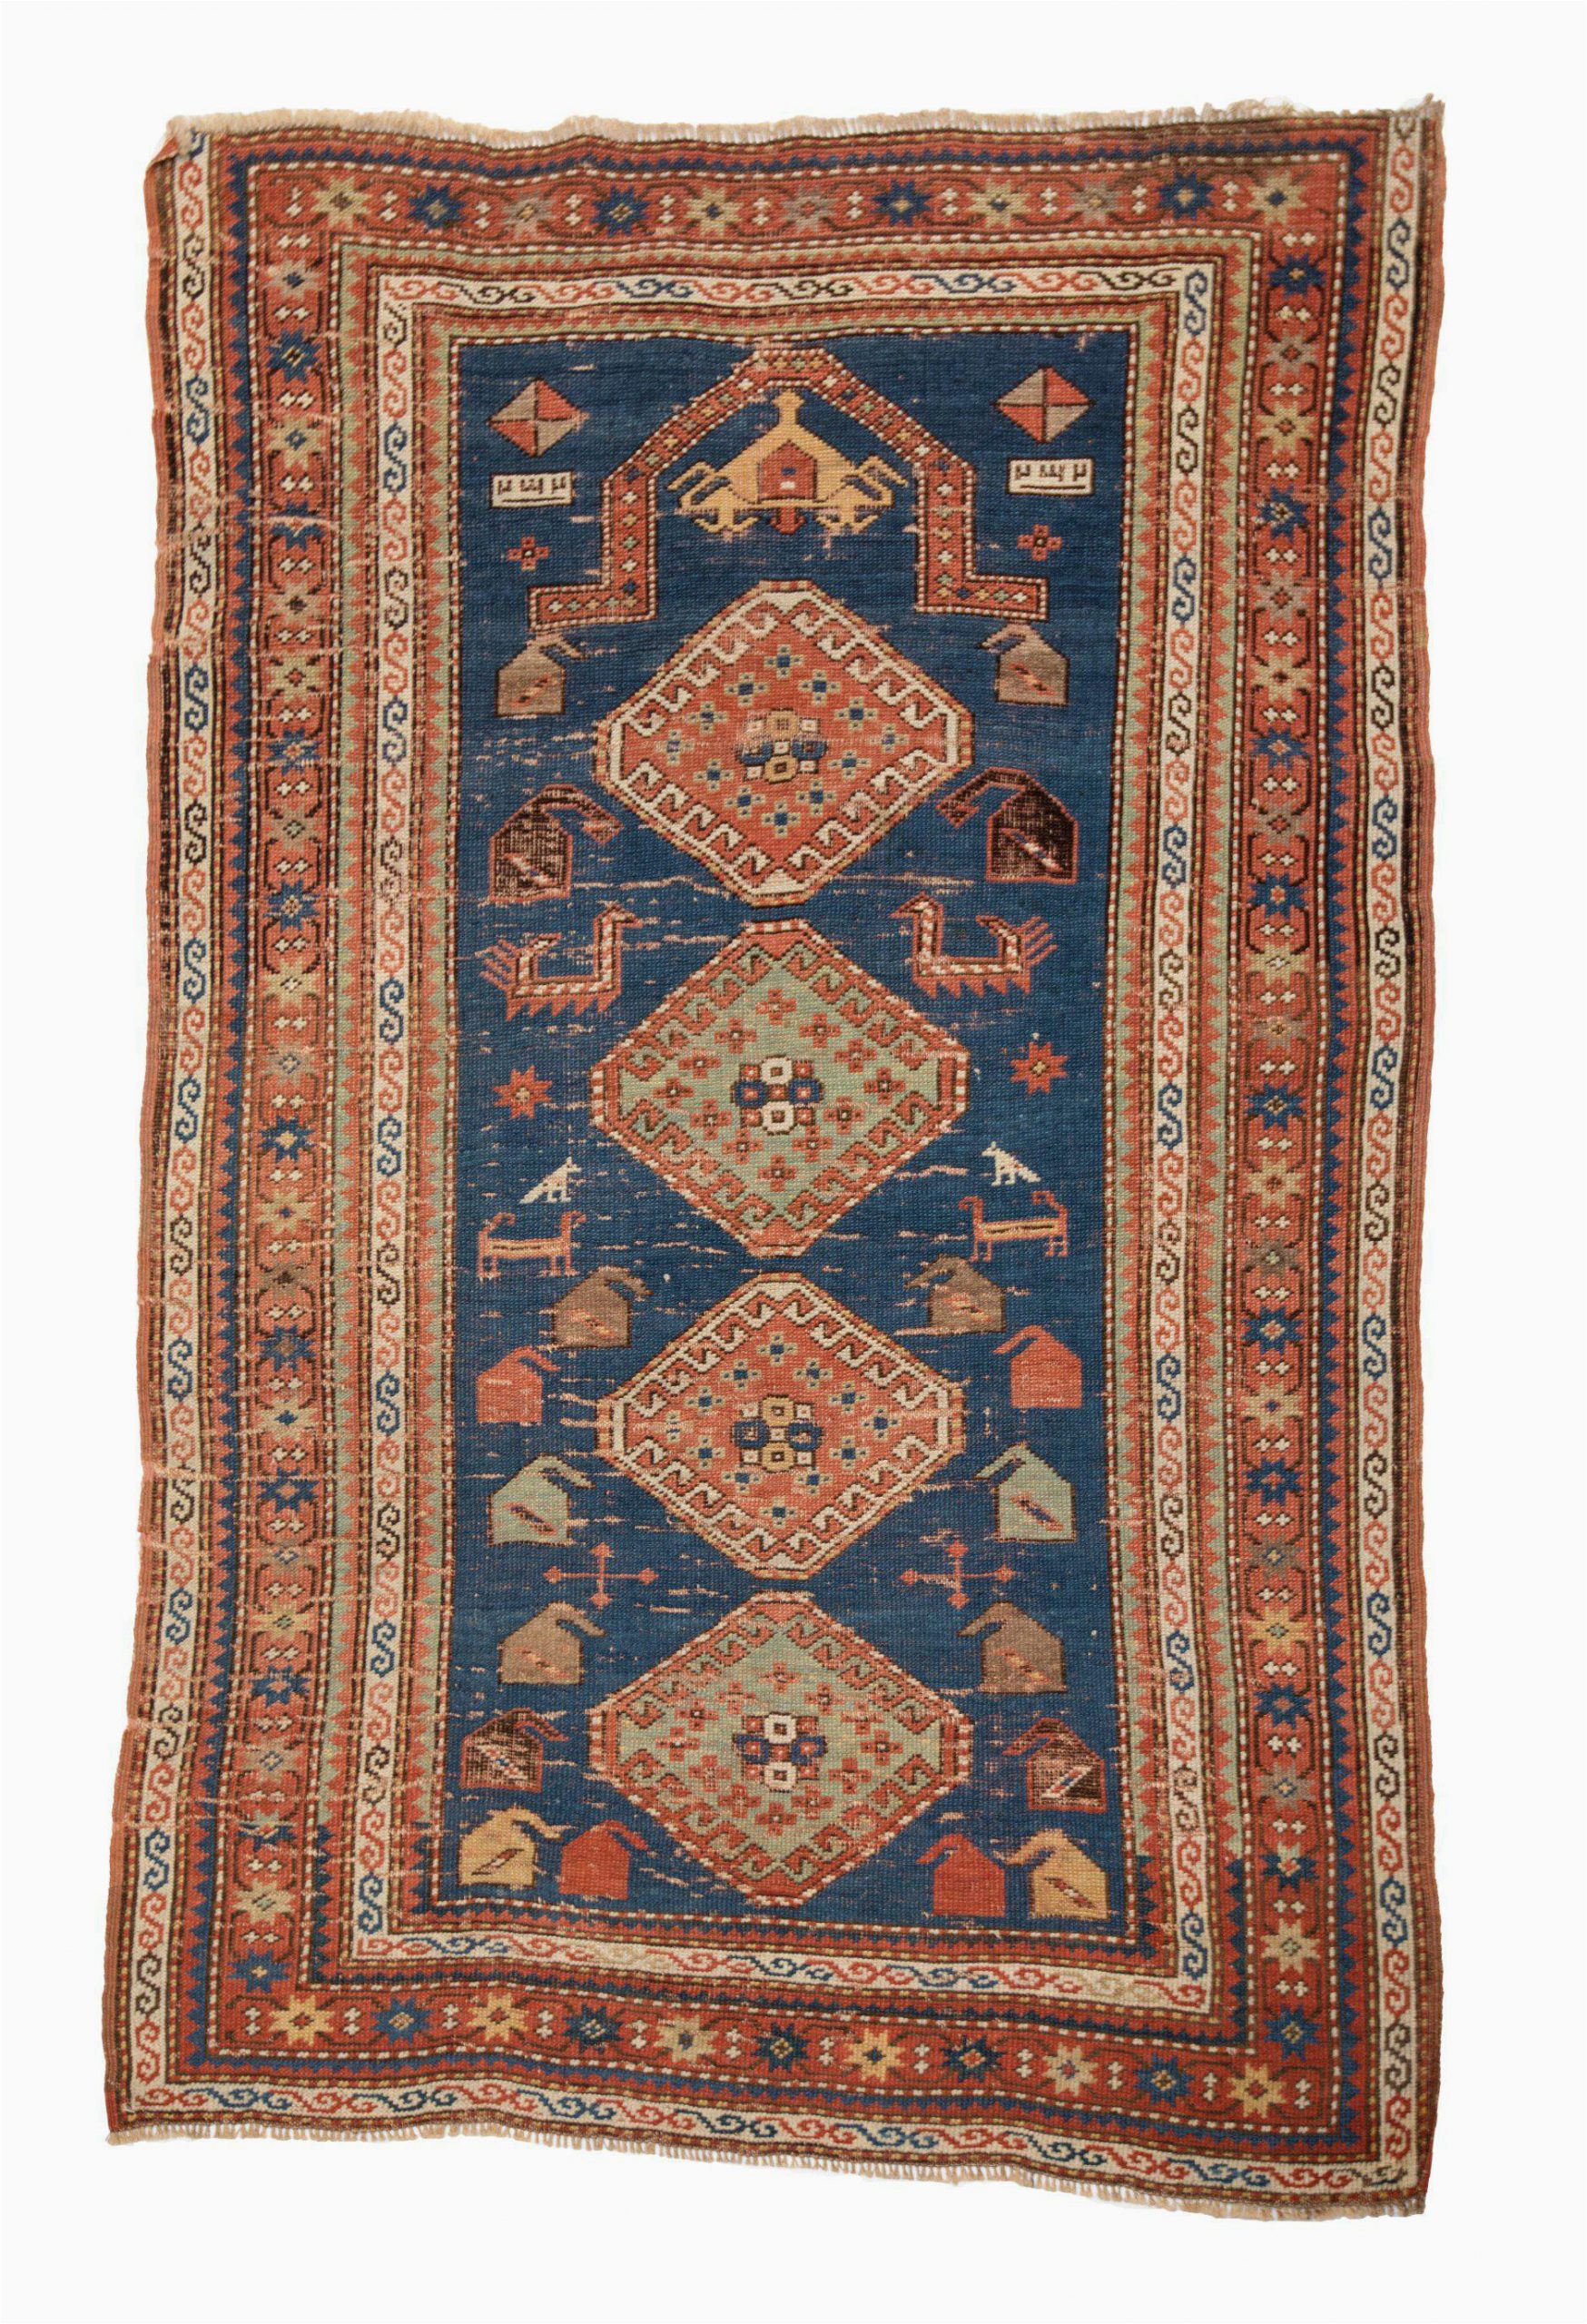 3ft X 4ft area Rug Caucasian Persian Antique Carpet